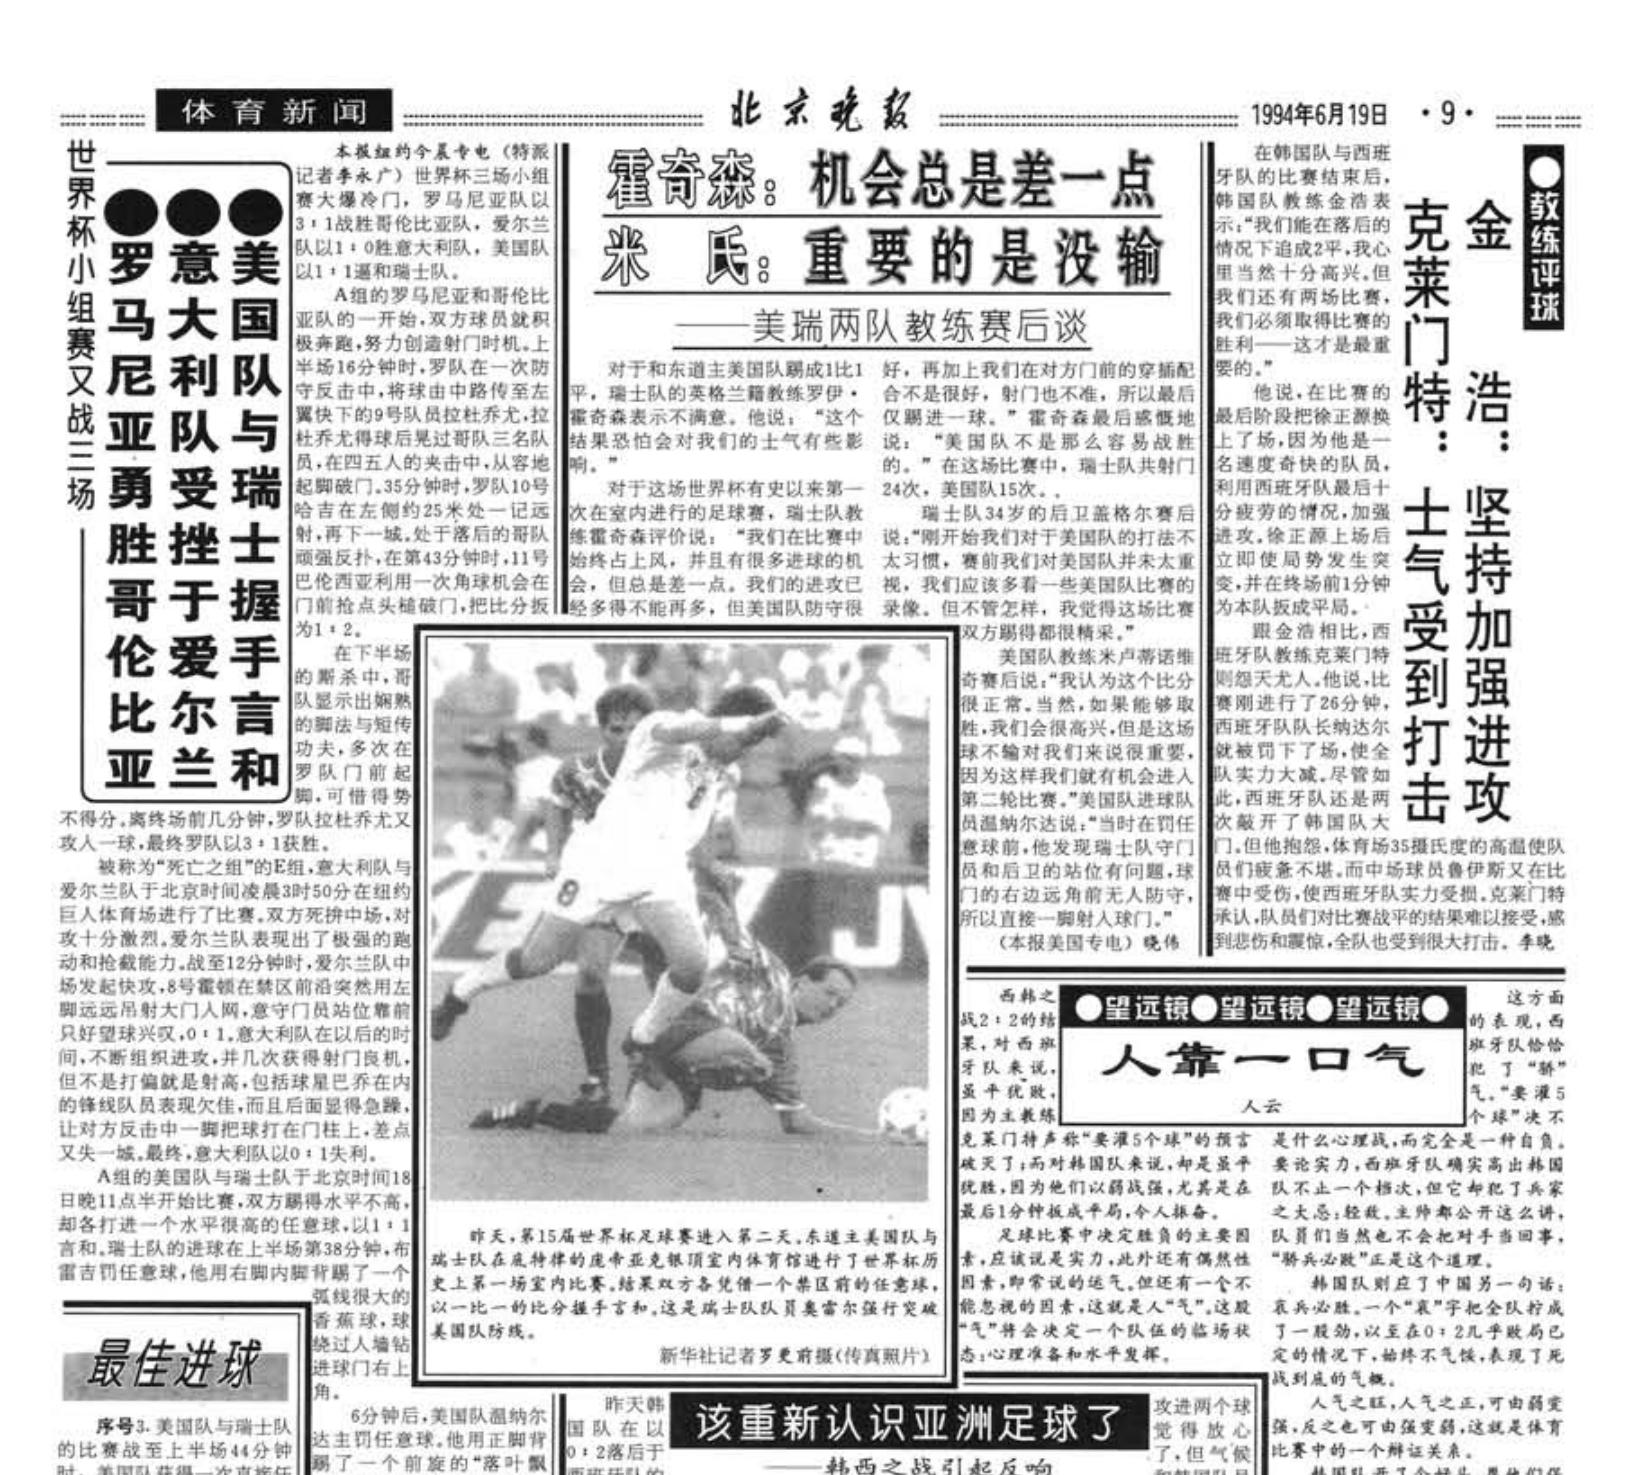 各有滋味在其中 回顾北京日报社32年世界杯报道历程---1994年和1998年